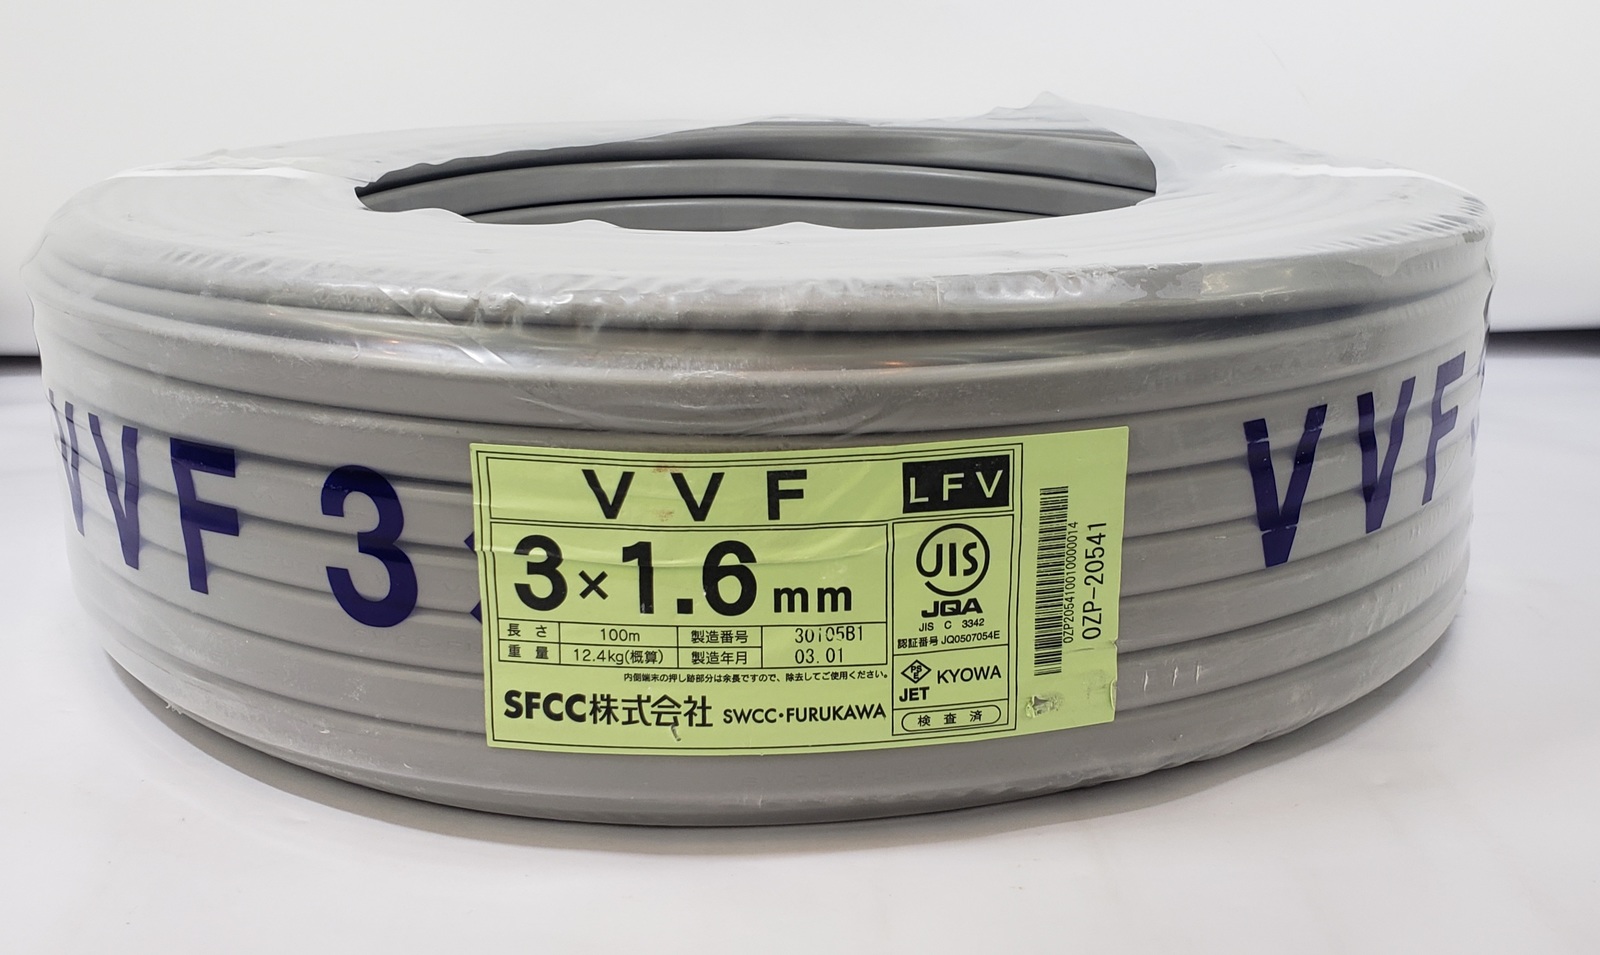 SFCC株式会社 VVFケーブル 1.6mm×3芯 100m巻 VVF1.6×3C×100m 黒白赤 RSL | ソフネットジャパン楽天市場店